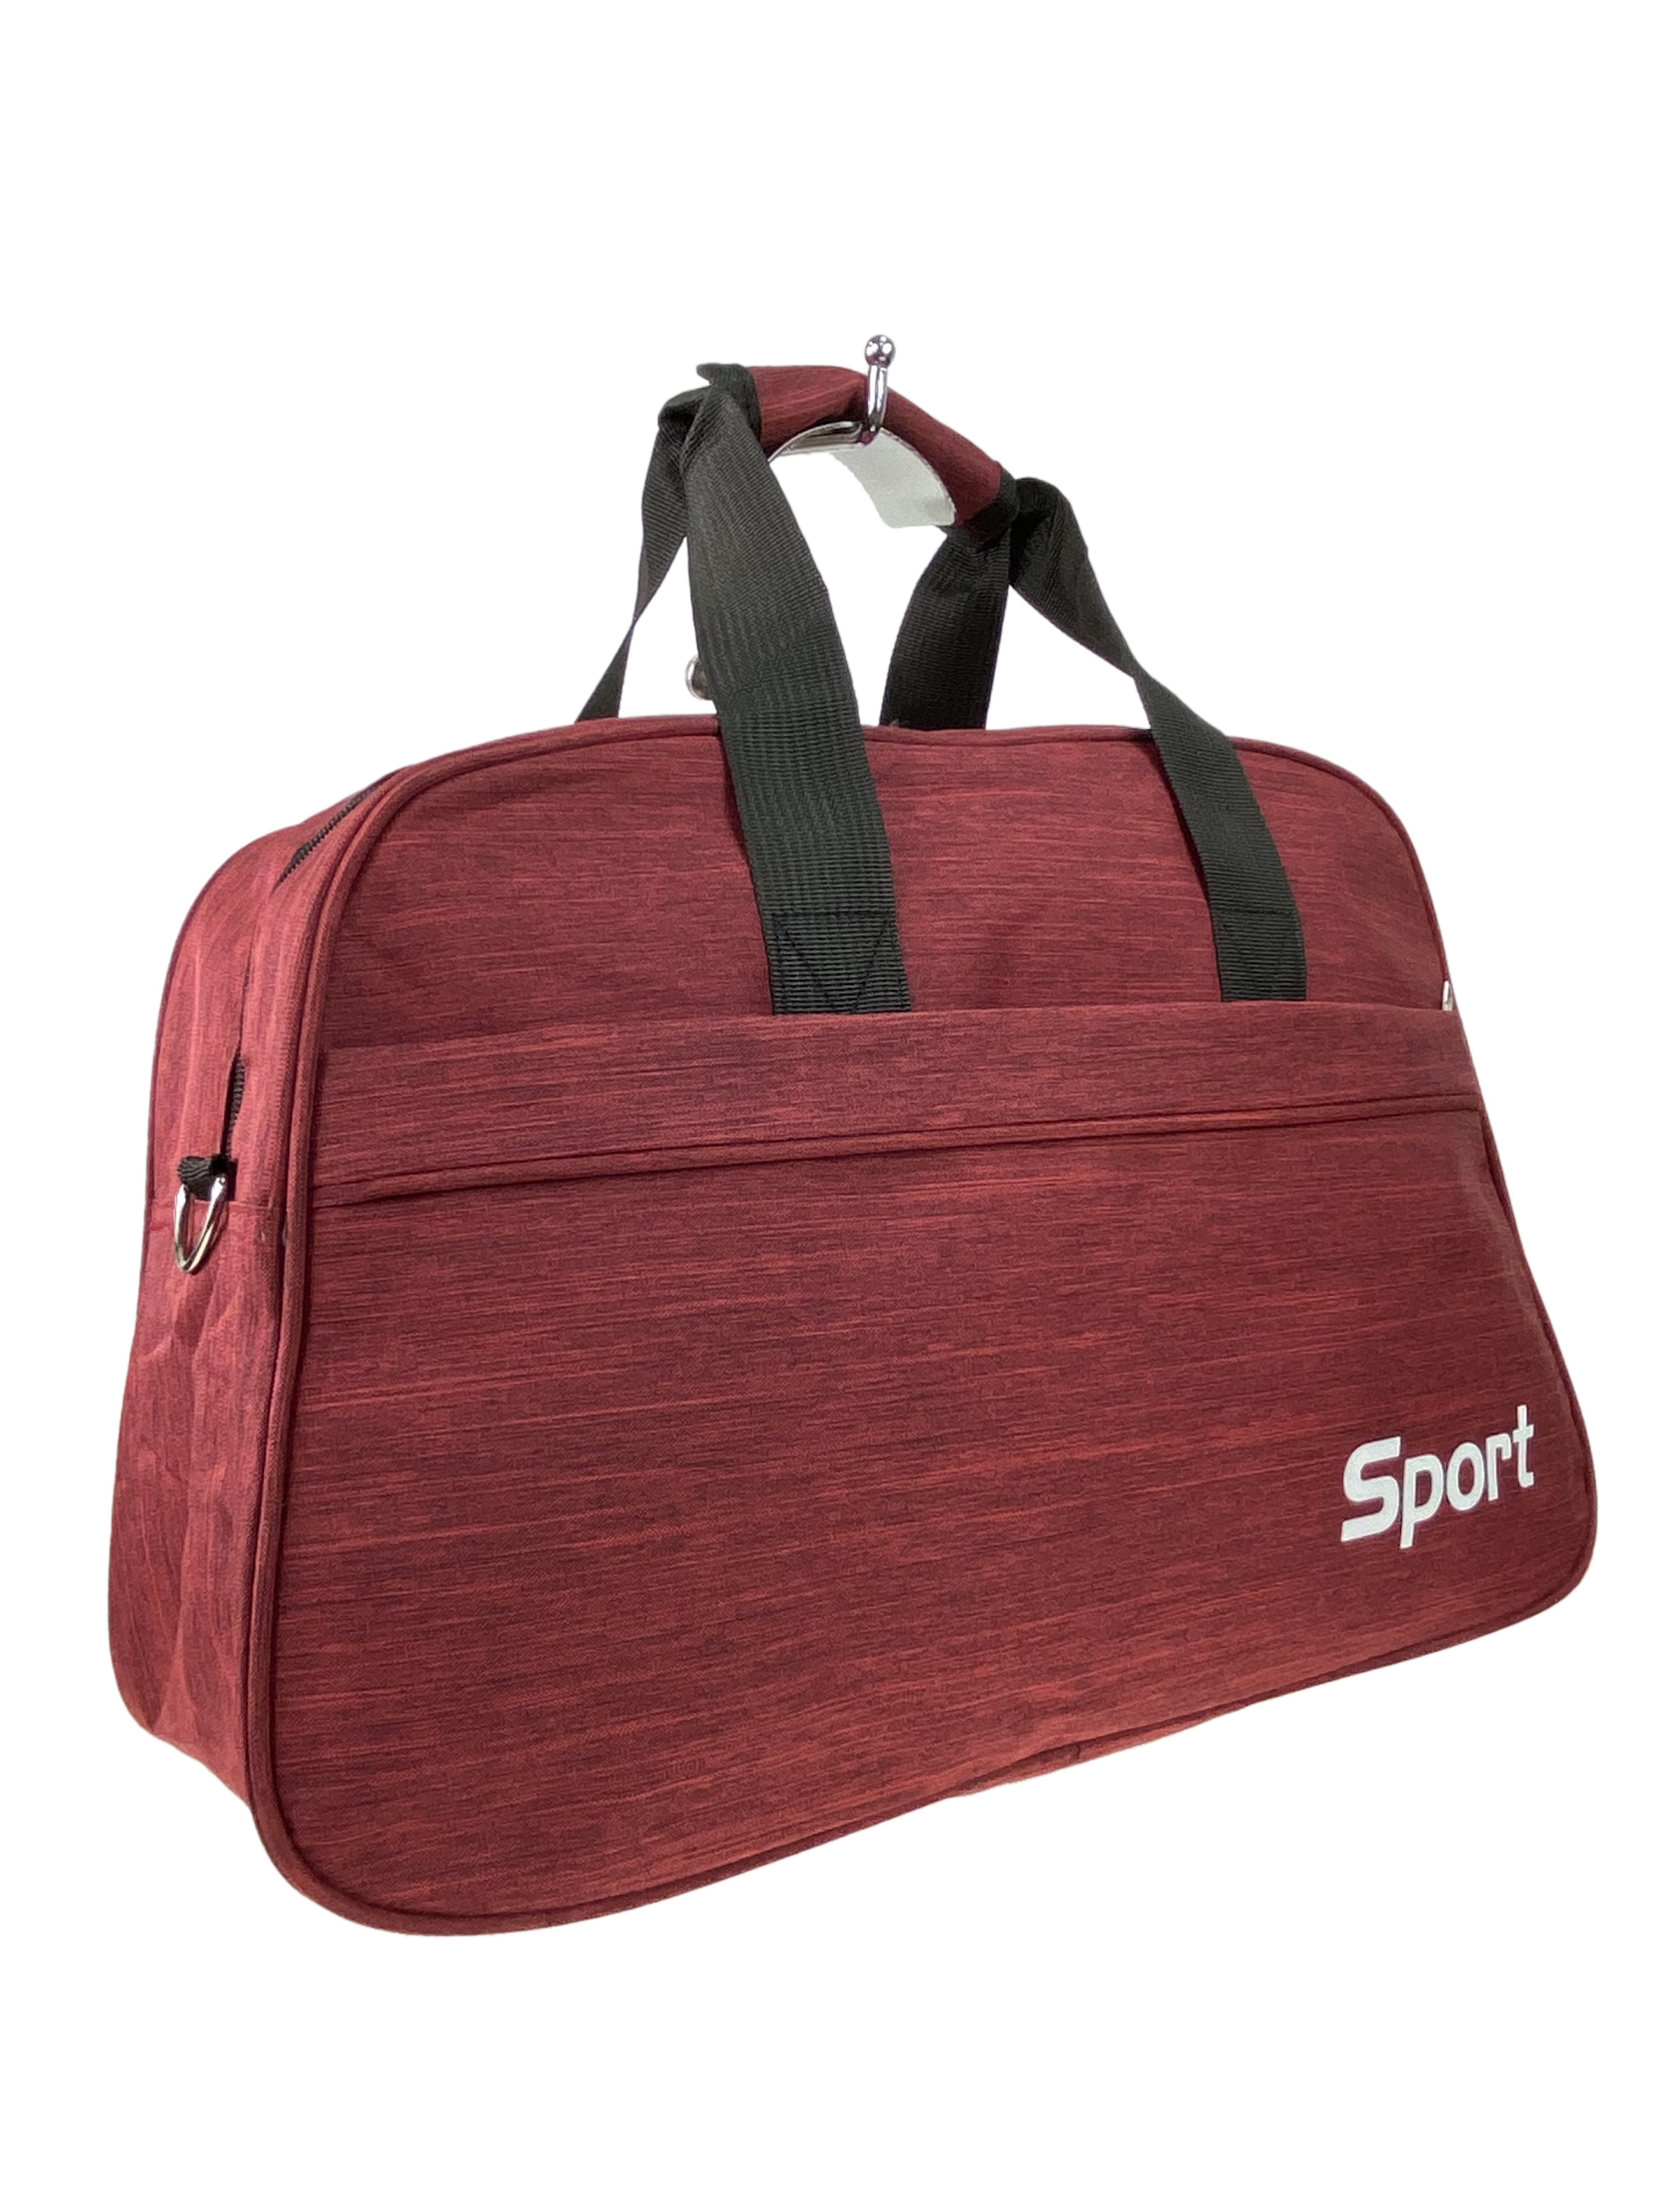 Дорожно-спортивная сумка из текстиля, цвет бордовый